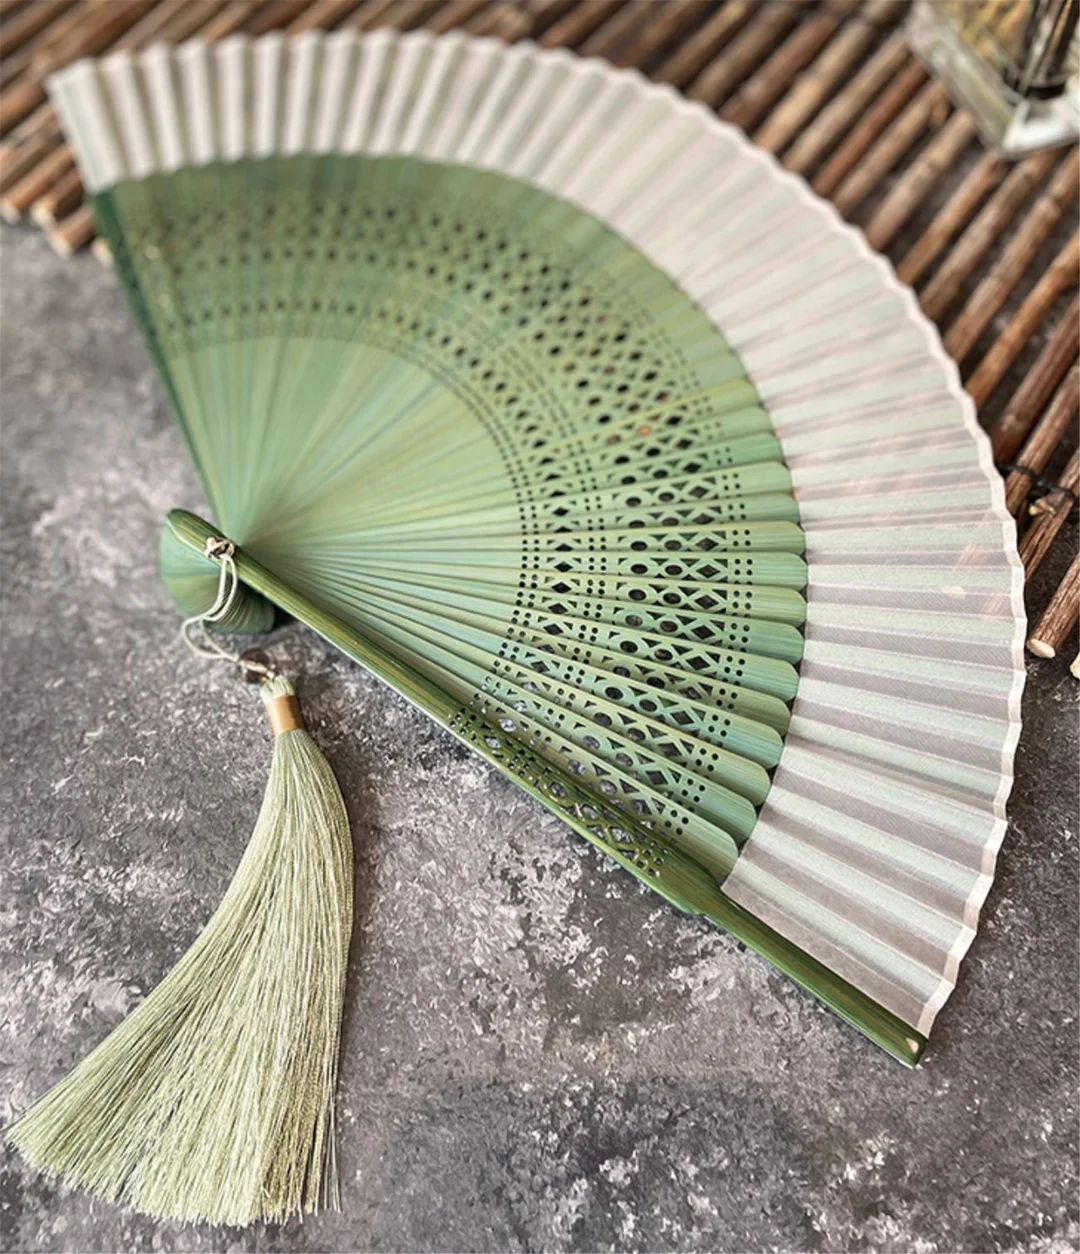 Grass Greenery Bamboo Hand Fan, Japanese Edo Period Style Folding Fan, Hand Held Silk Folding Fan... | Etsy (US)